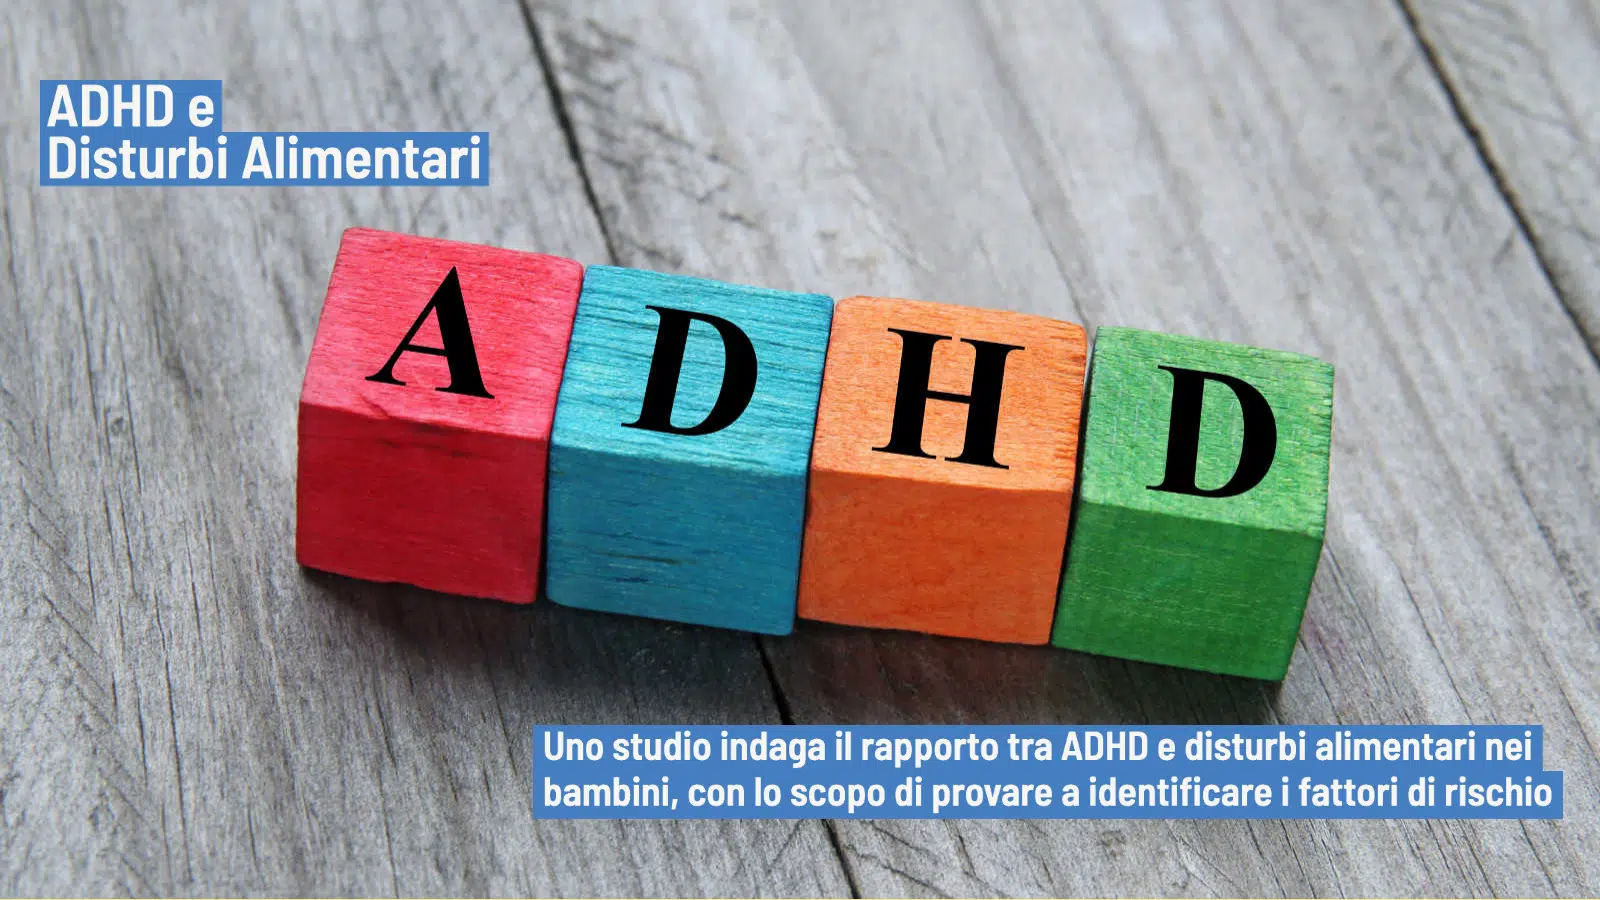 ADHD e disturbi alimentari nei bambini studi sulla comorbidita